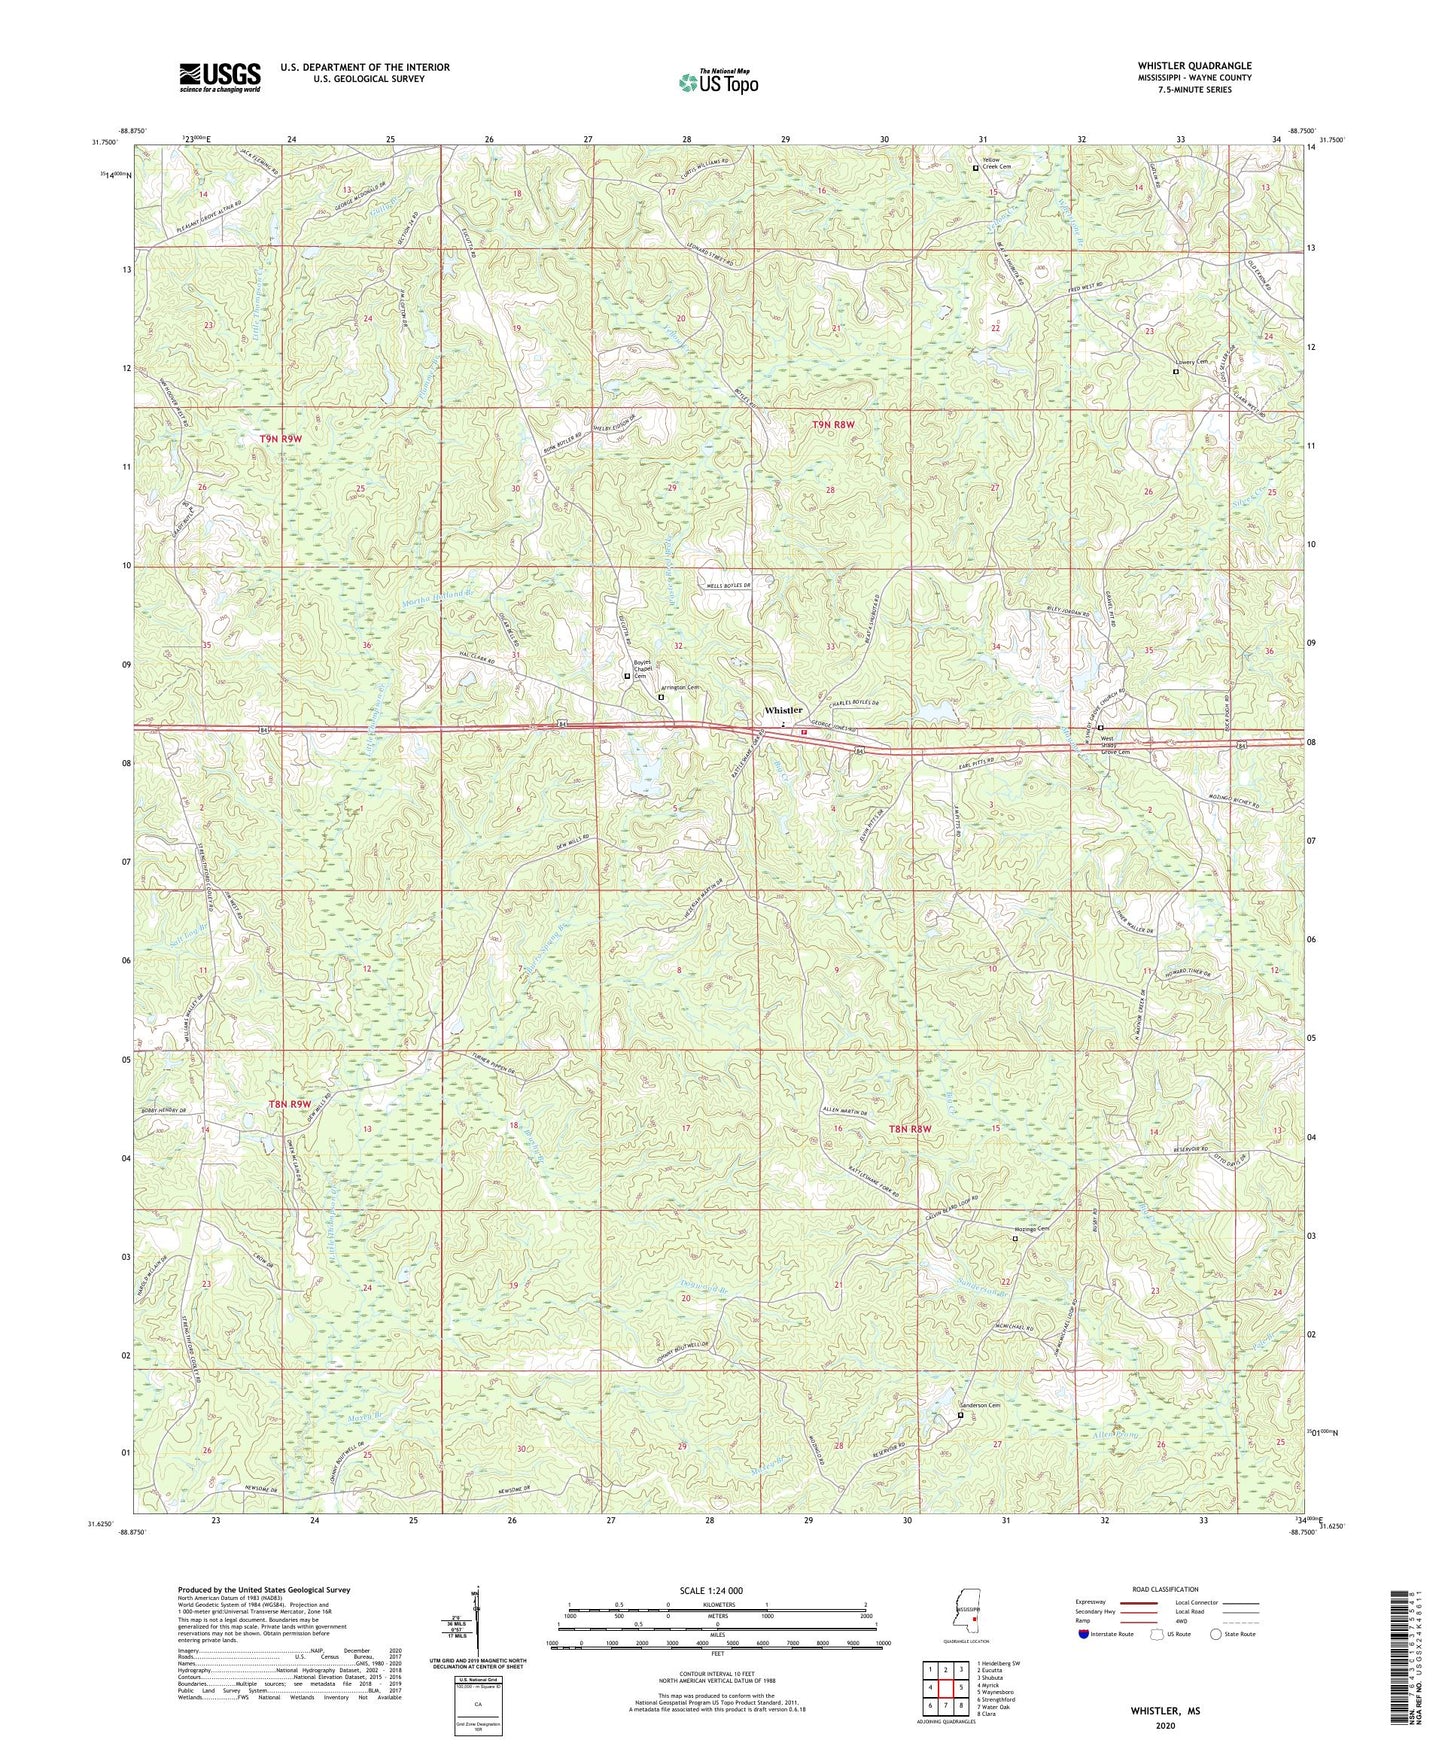 Whistler Mississippi US Topo Map Image